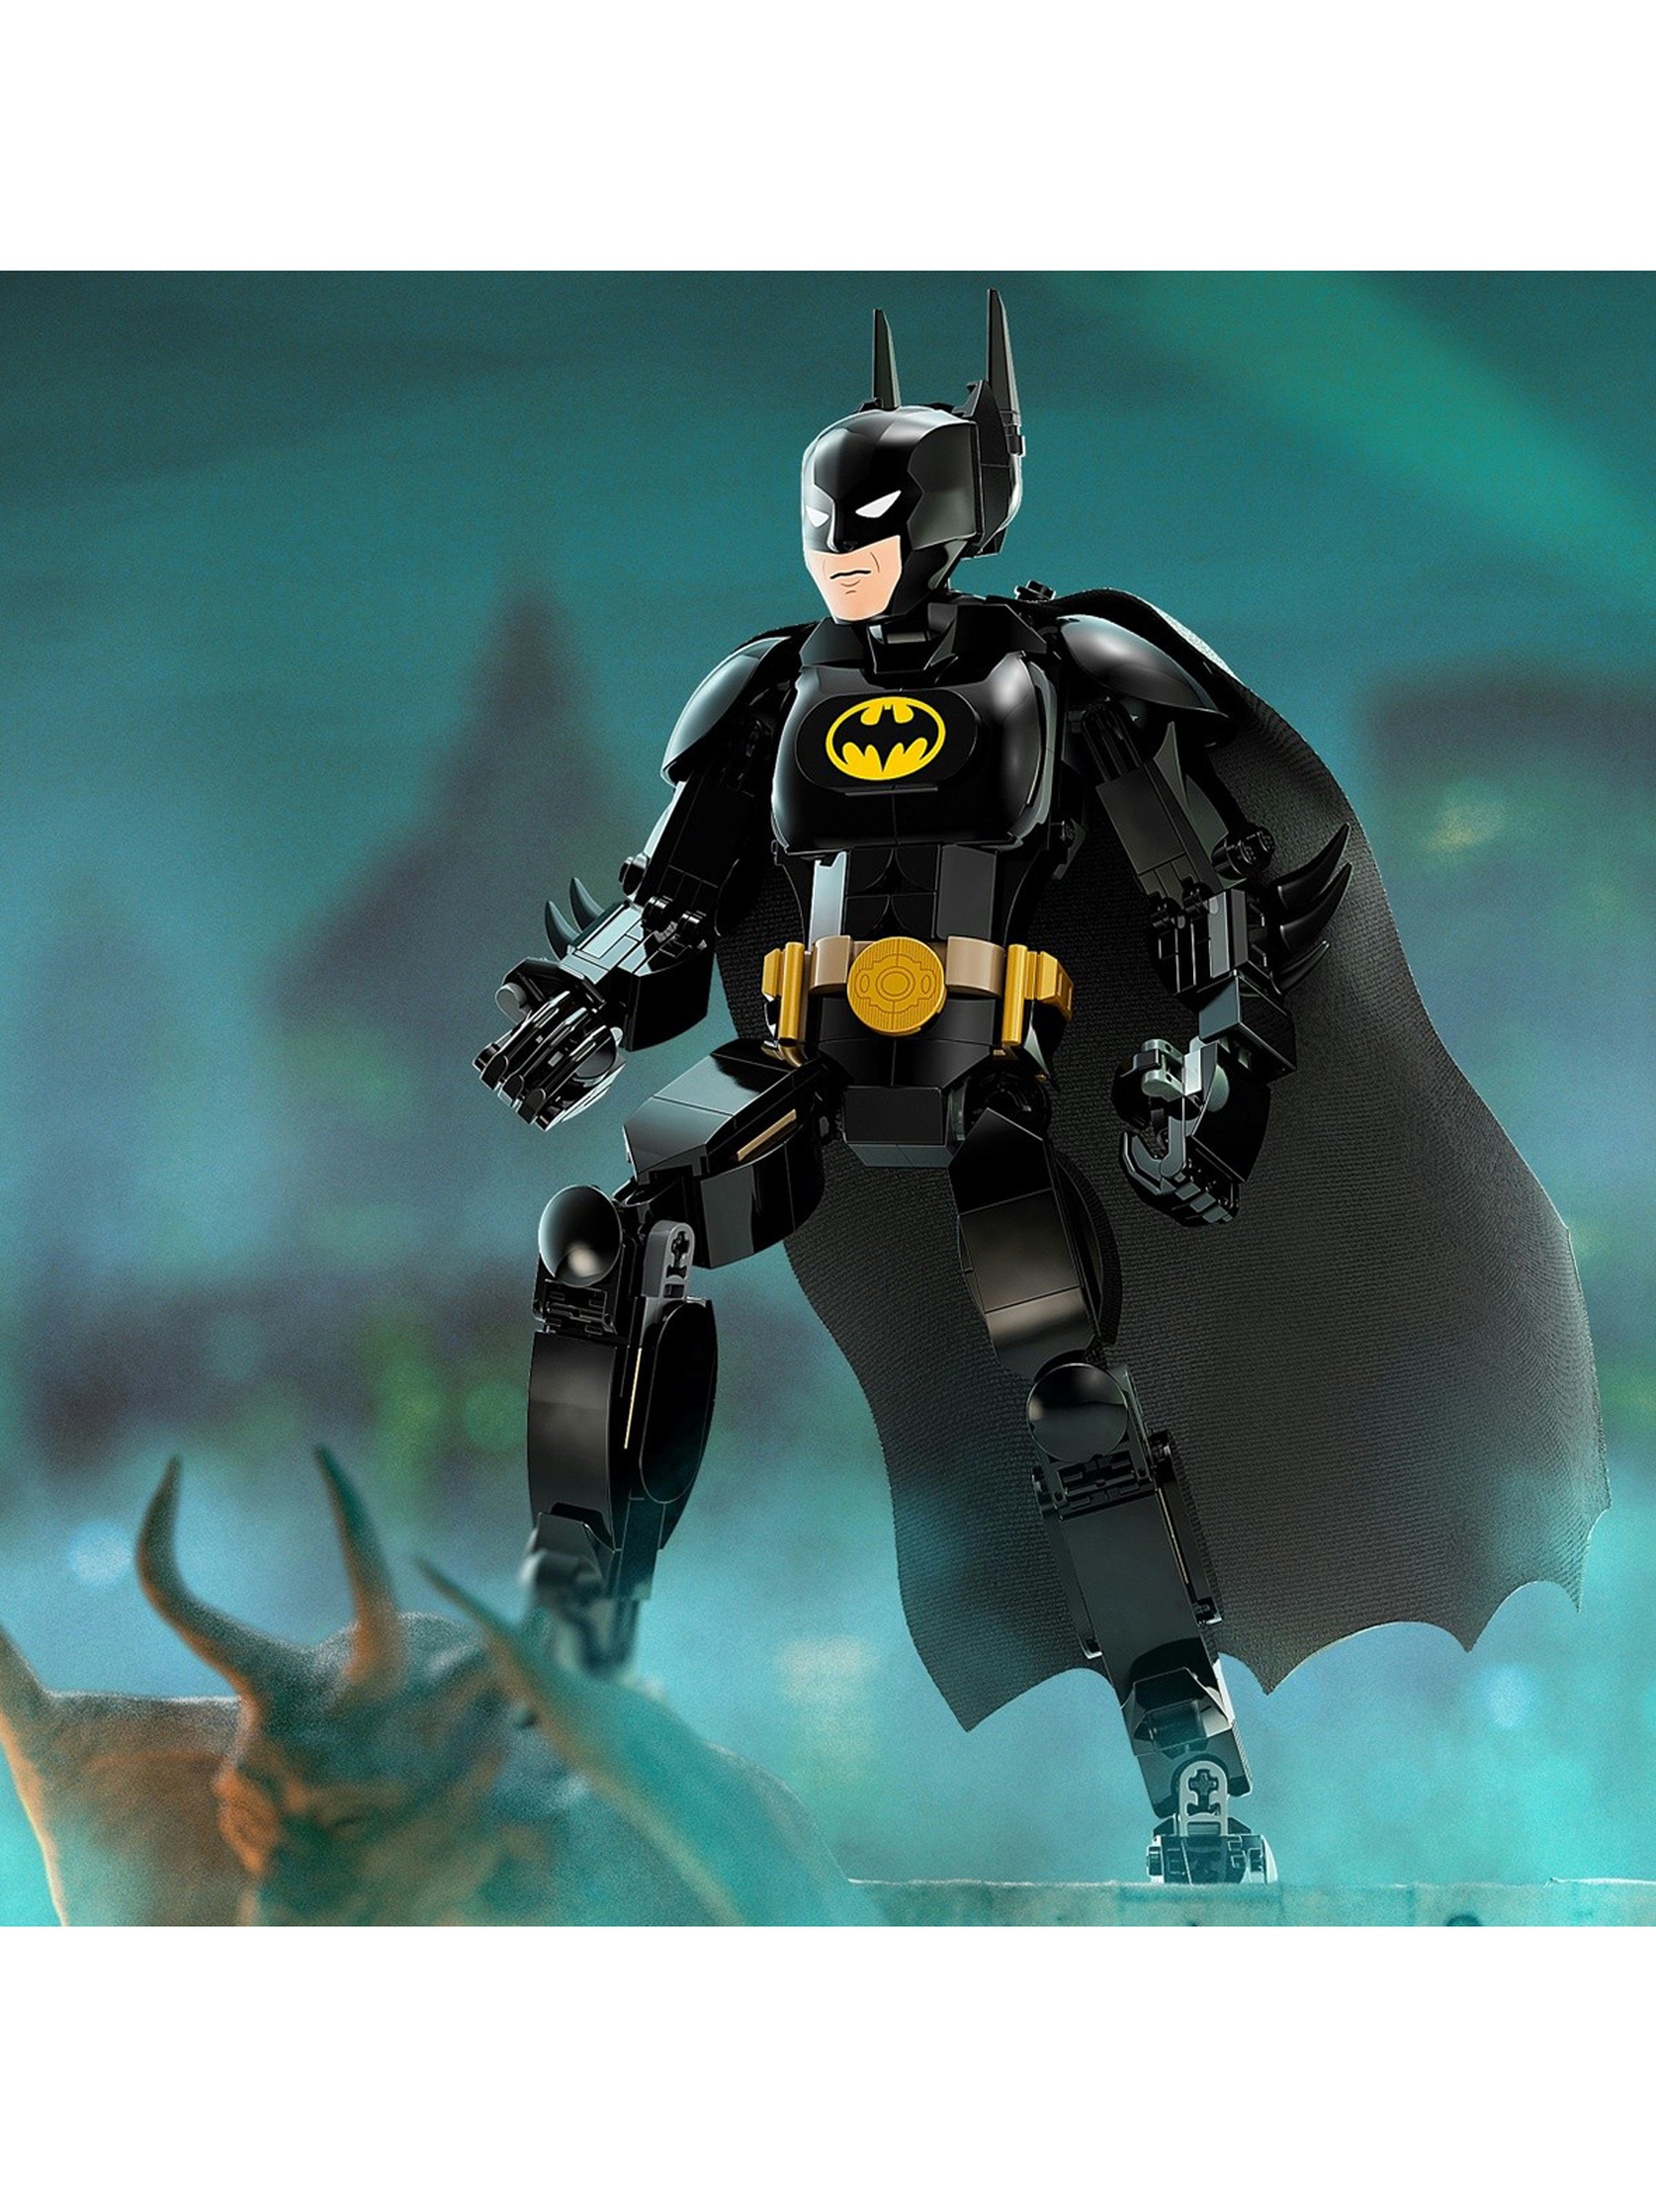 Klocki LEGO Super Heroes 76259 DC Figurka Batmana do zbudowania - 275 elementów, wiek 8 +